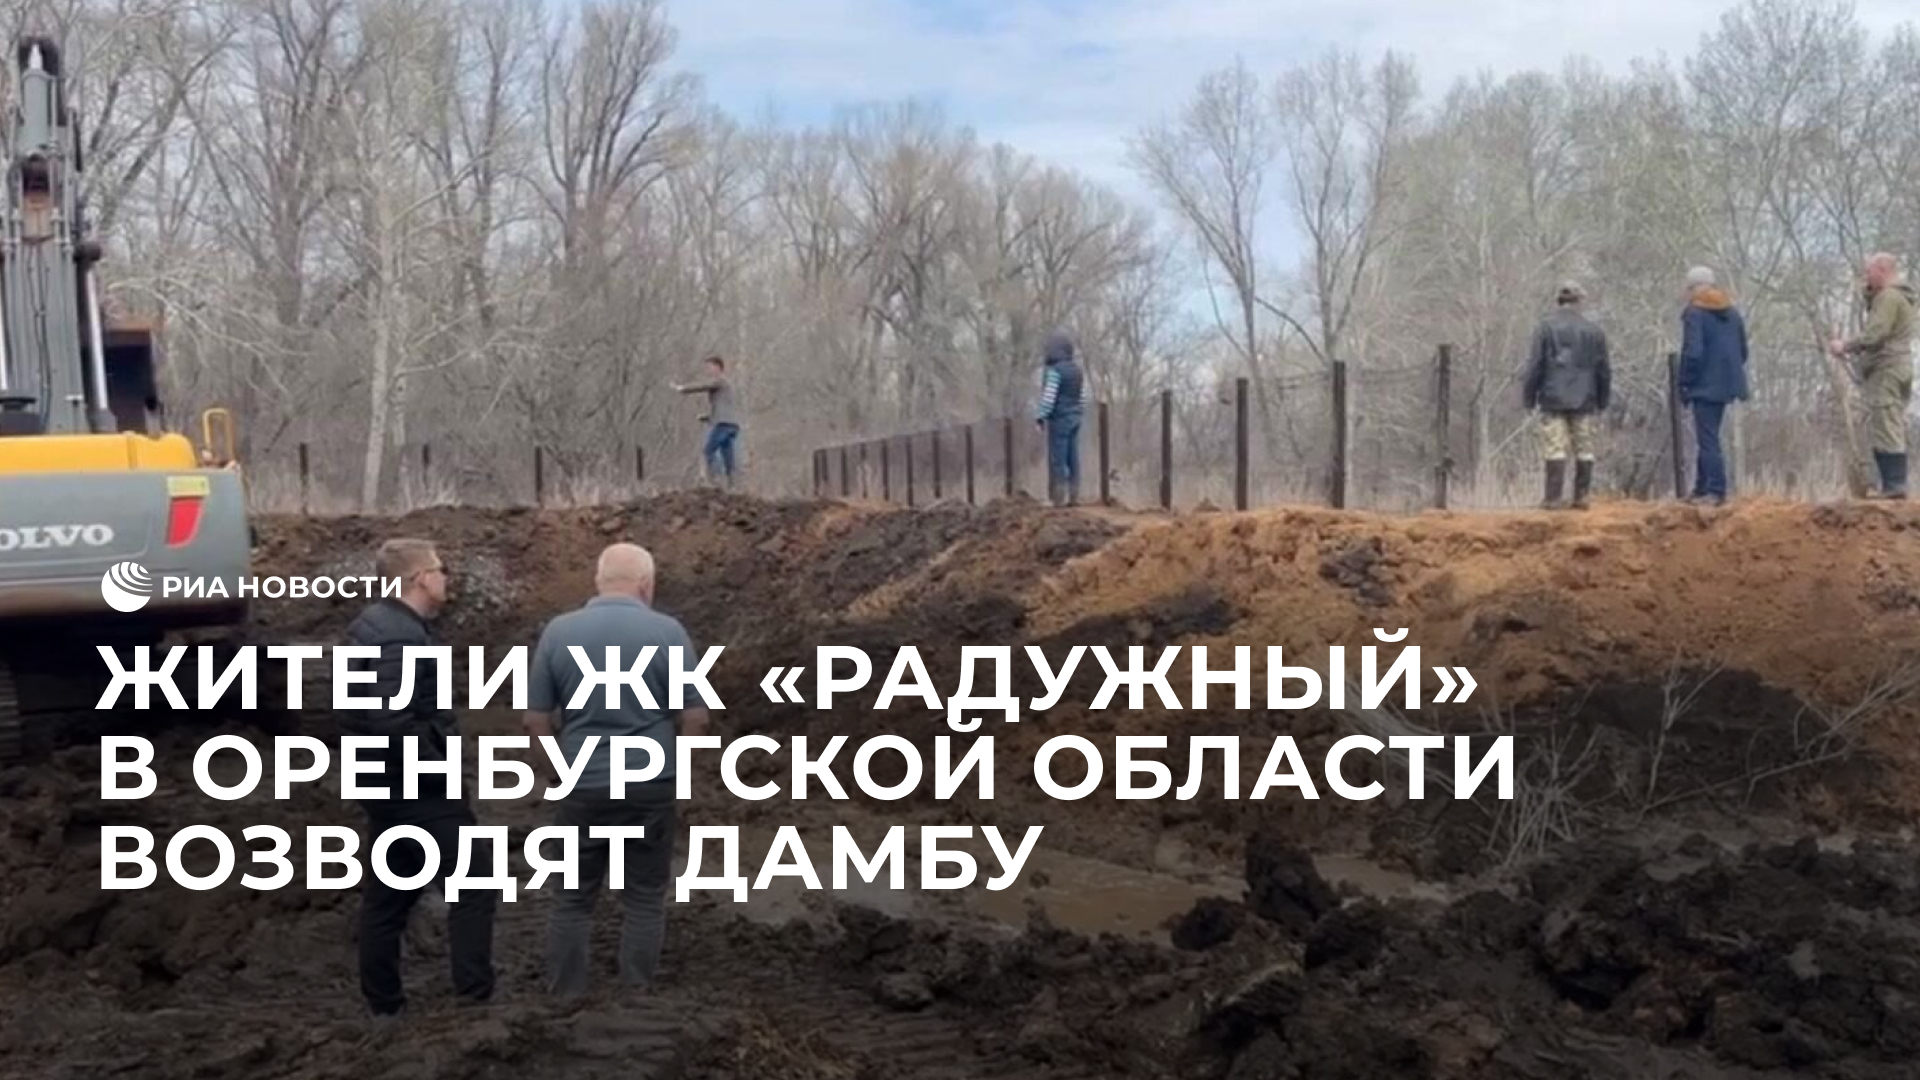 Жители ЖК "Радужный" в Оренбургской области возводят дамбу